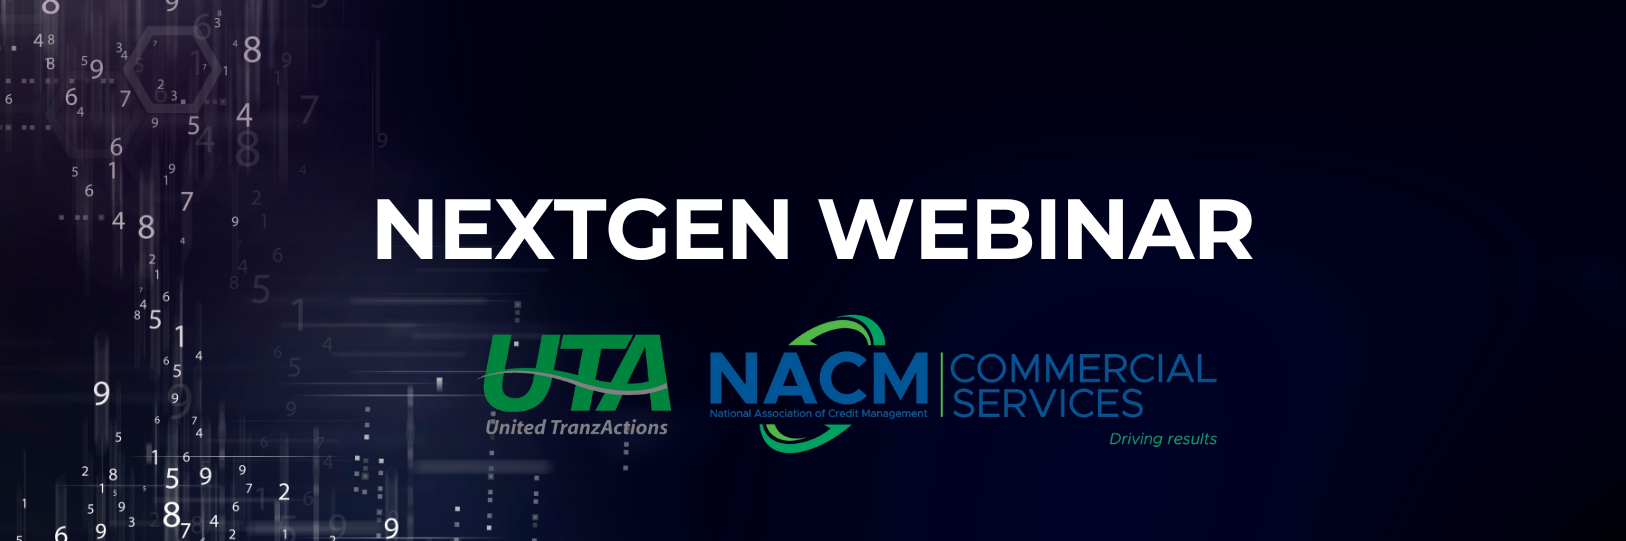 UTA Hosting NextGen Webinar for NACM Commercial Services September 14th @ 10AM PST